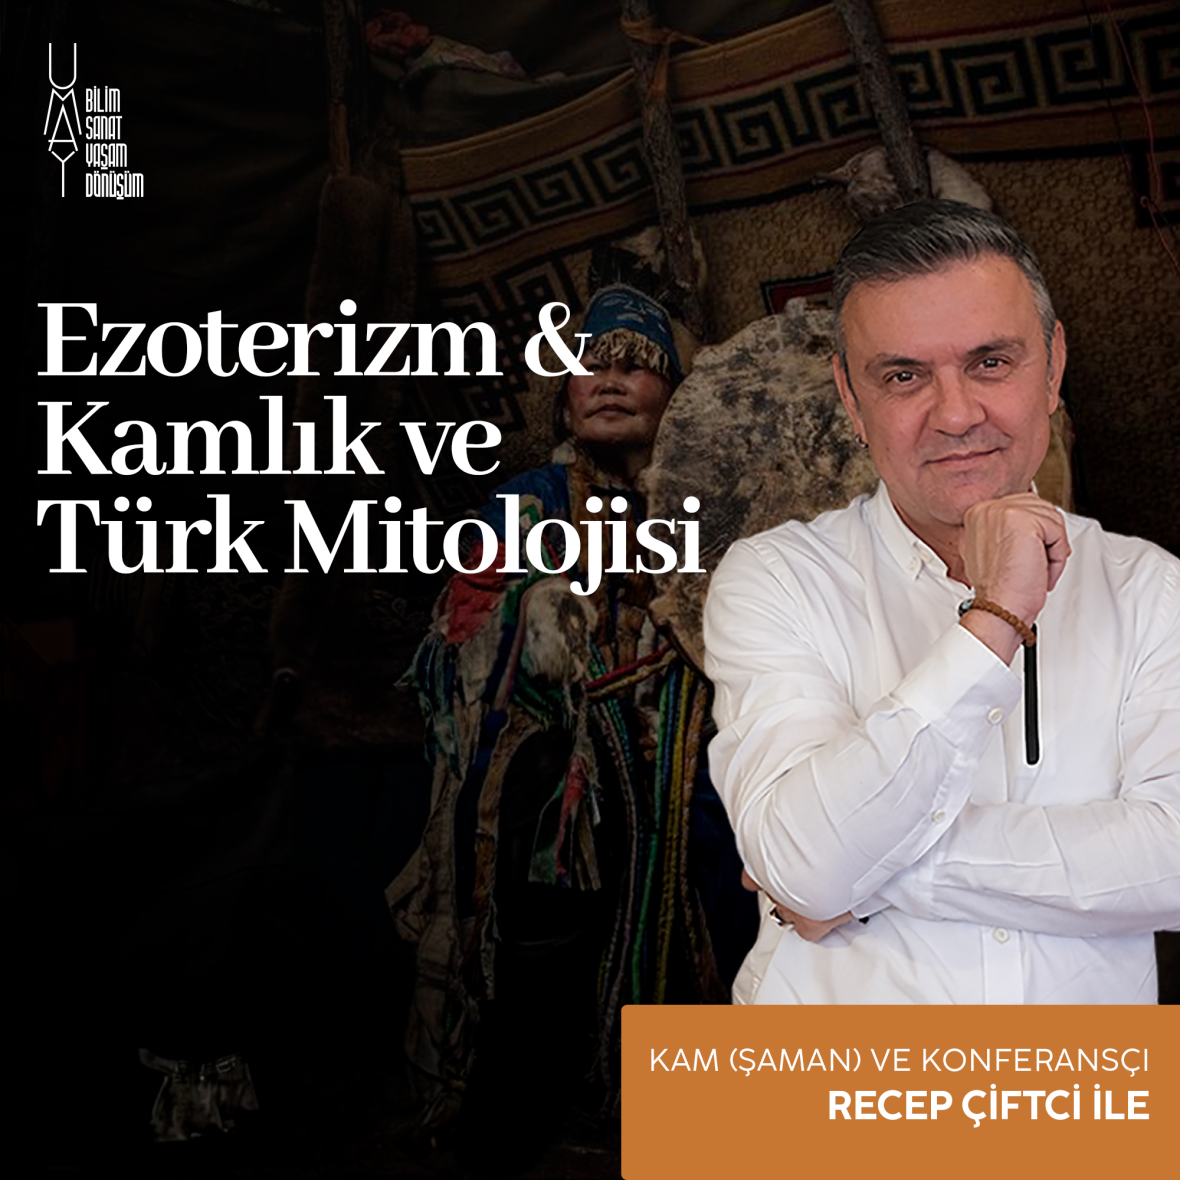 Ezoterizm & Kamlık Türk Mitolojisi